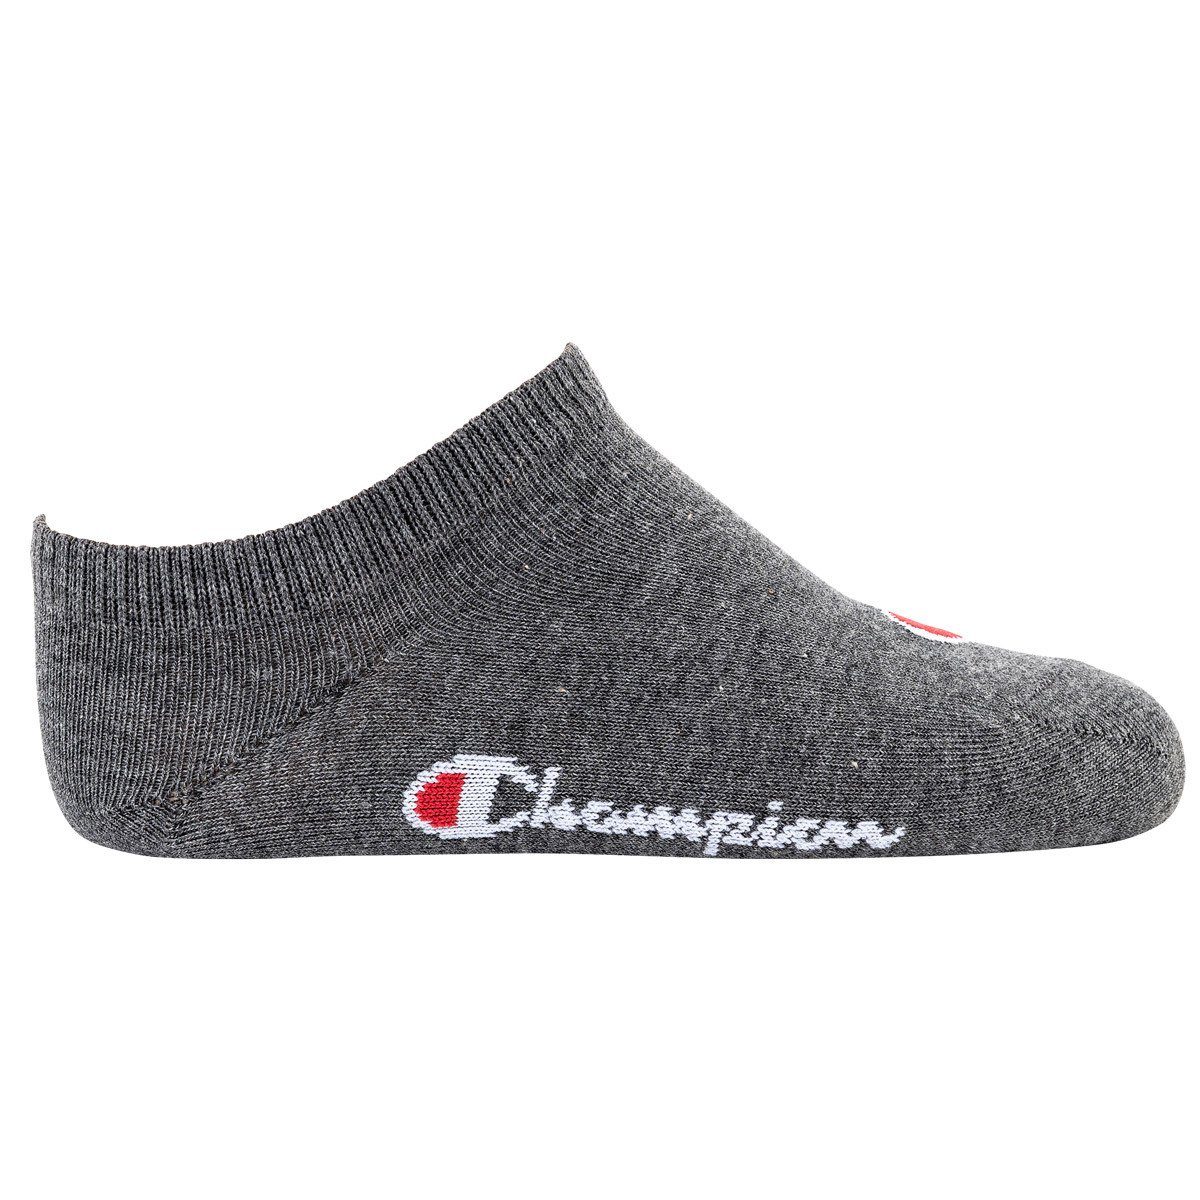 3er Kinder Pack- Socken, Champion Blau/Weiß/Grau einfarbig Sneaker, Freizeitsocken